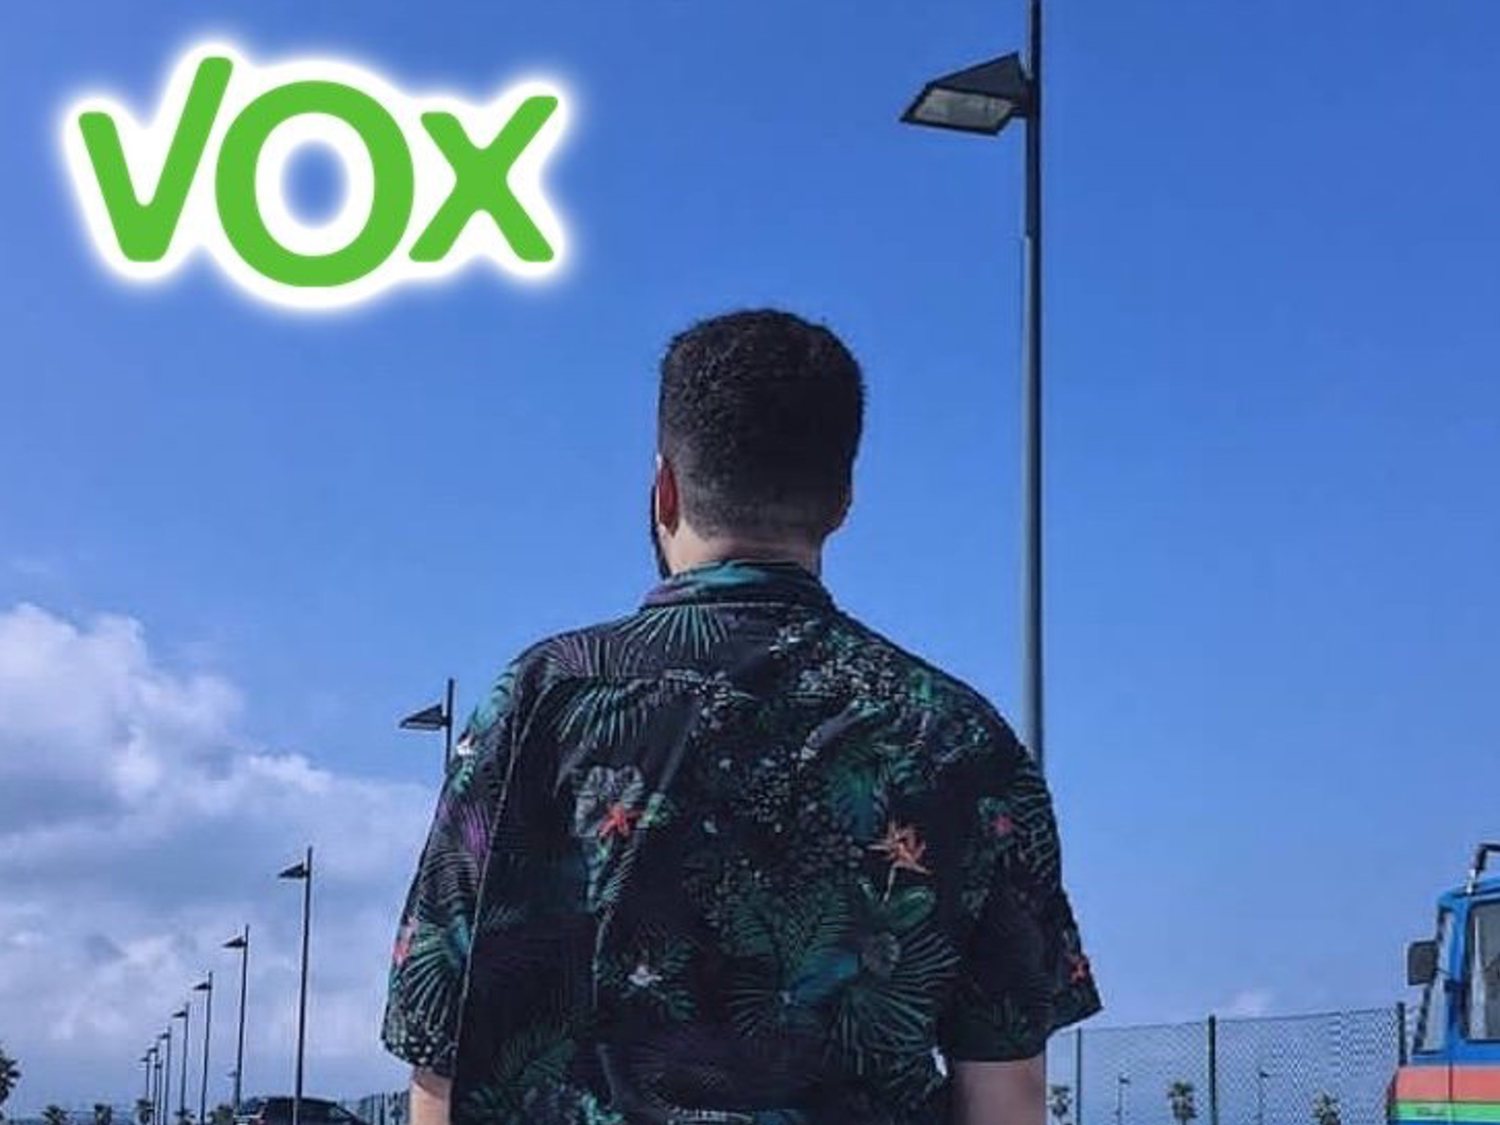 Un youtuber de VOX: "Yo soy homosexual, no gay, el colectivo no me representa"